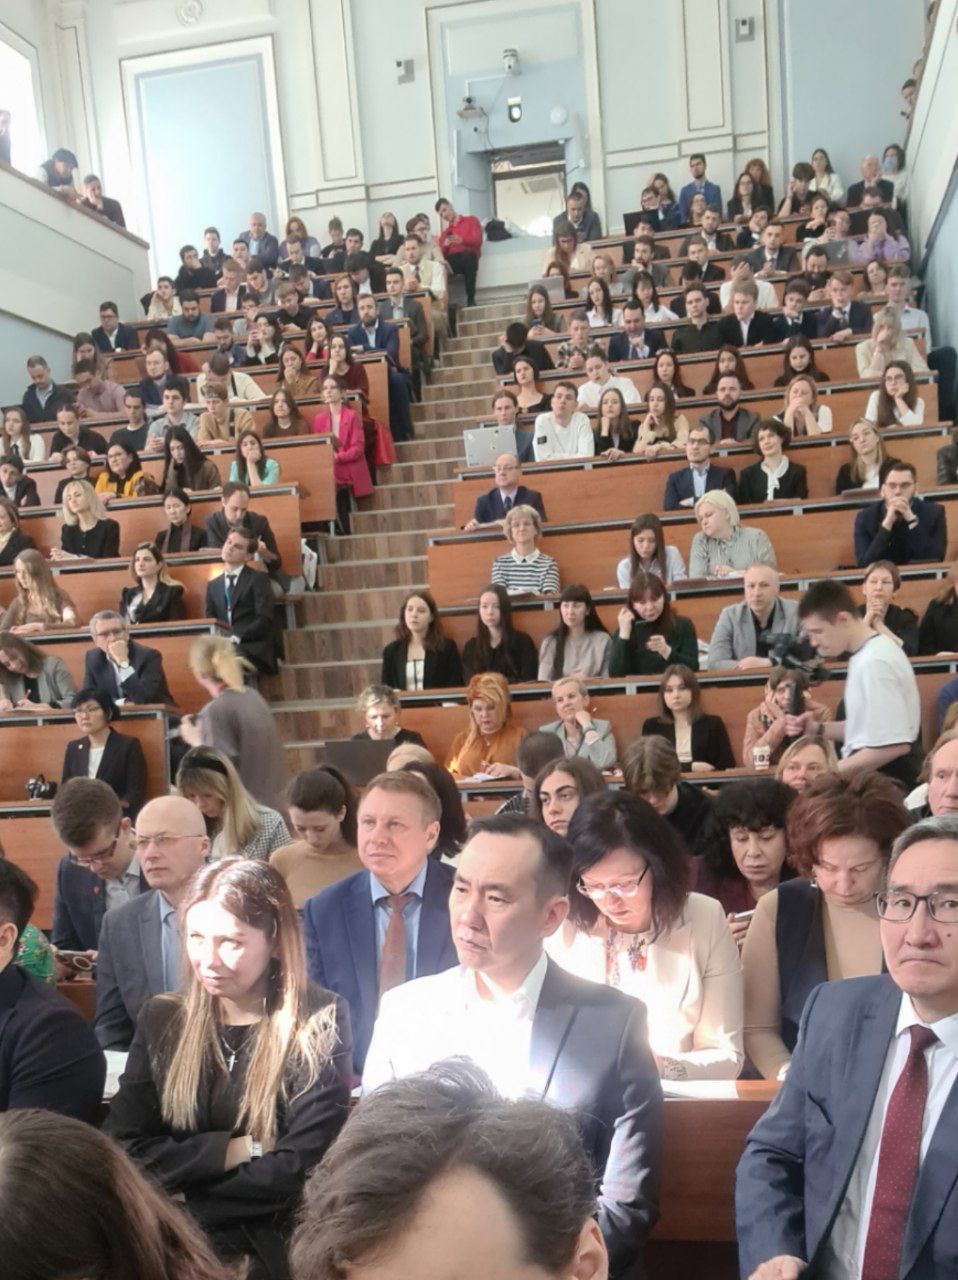 Ульяновская система оказания бесплатной юридической помощи представлена на Московском юридическом форуме